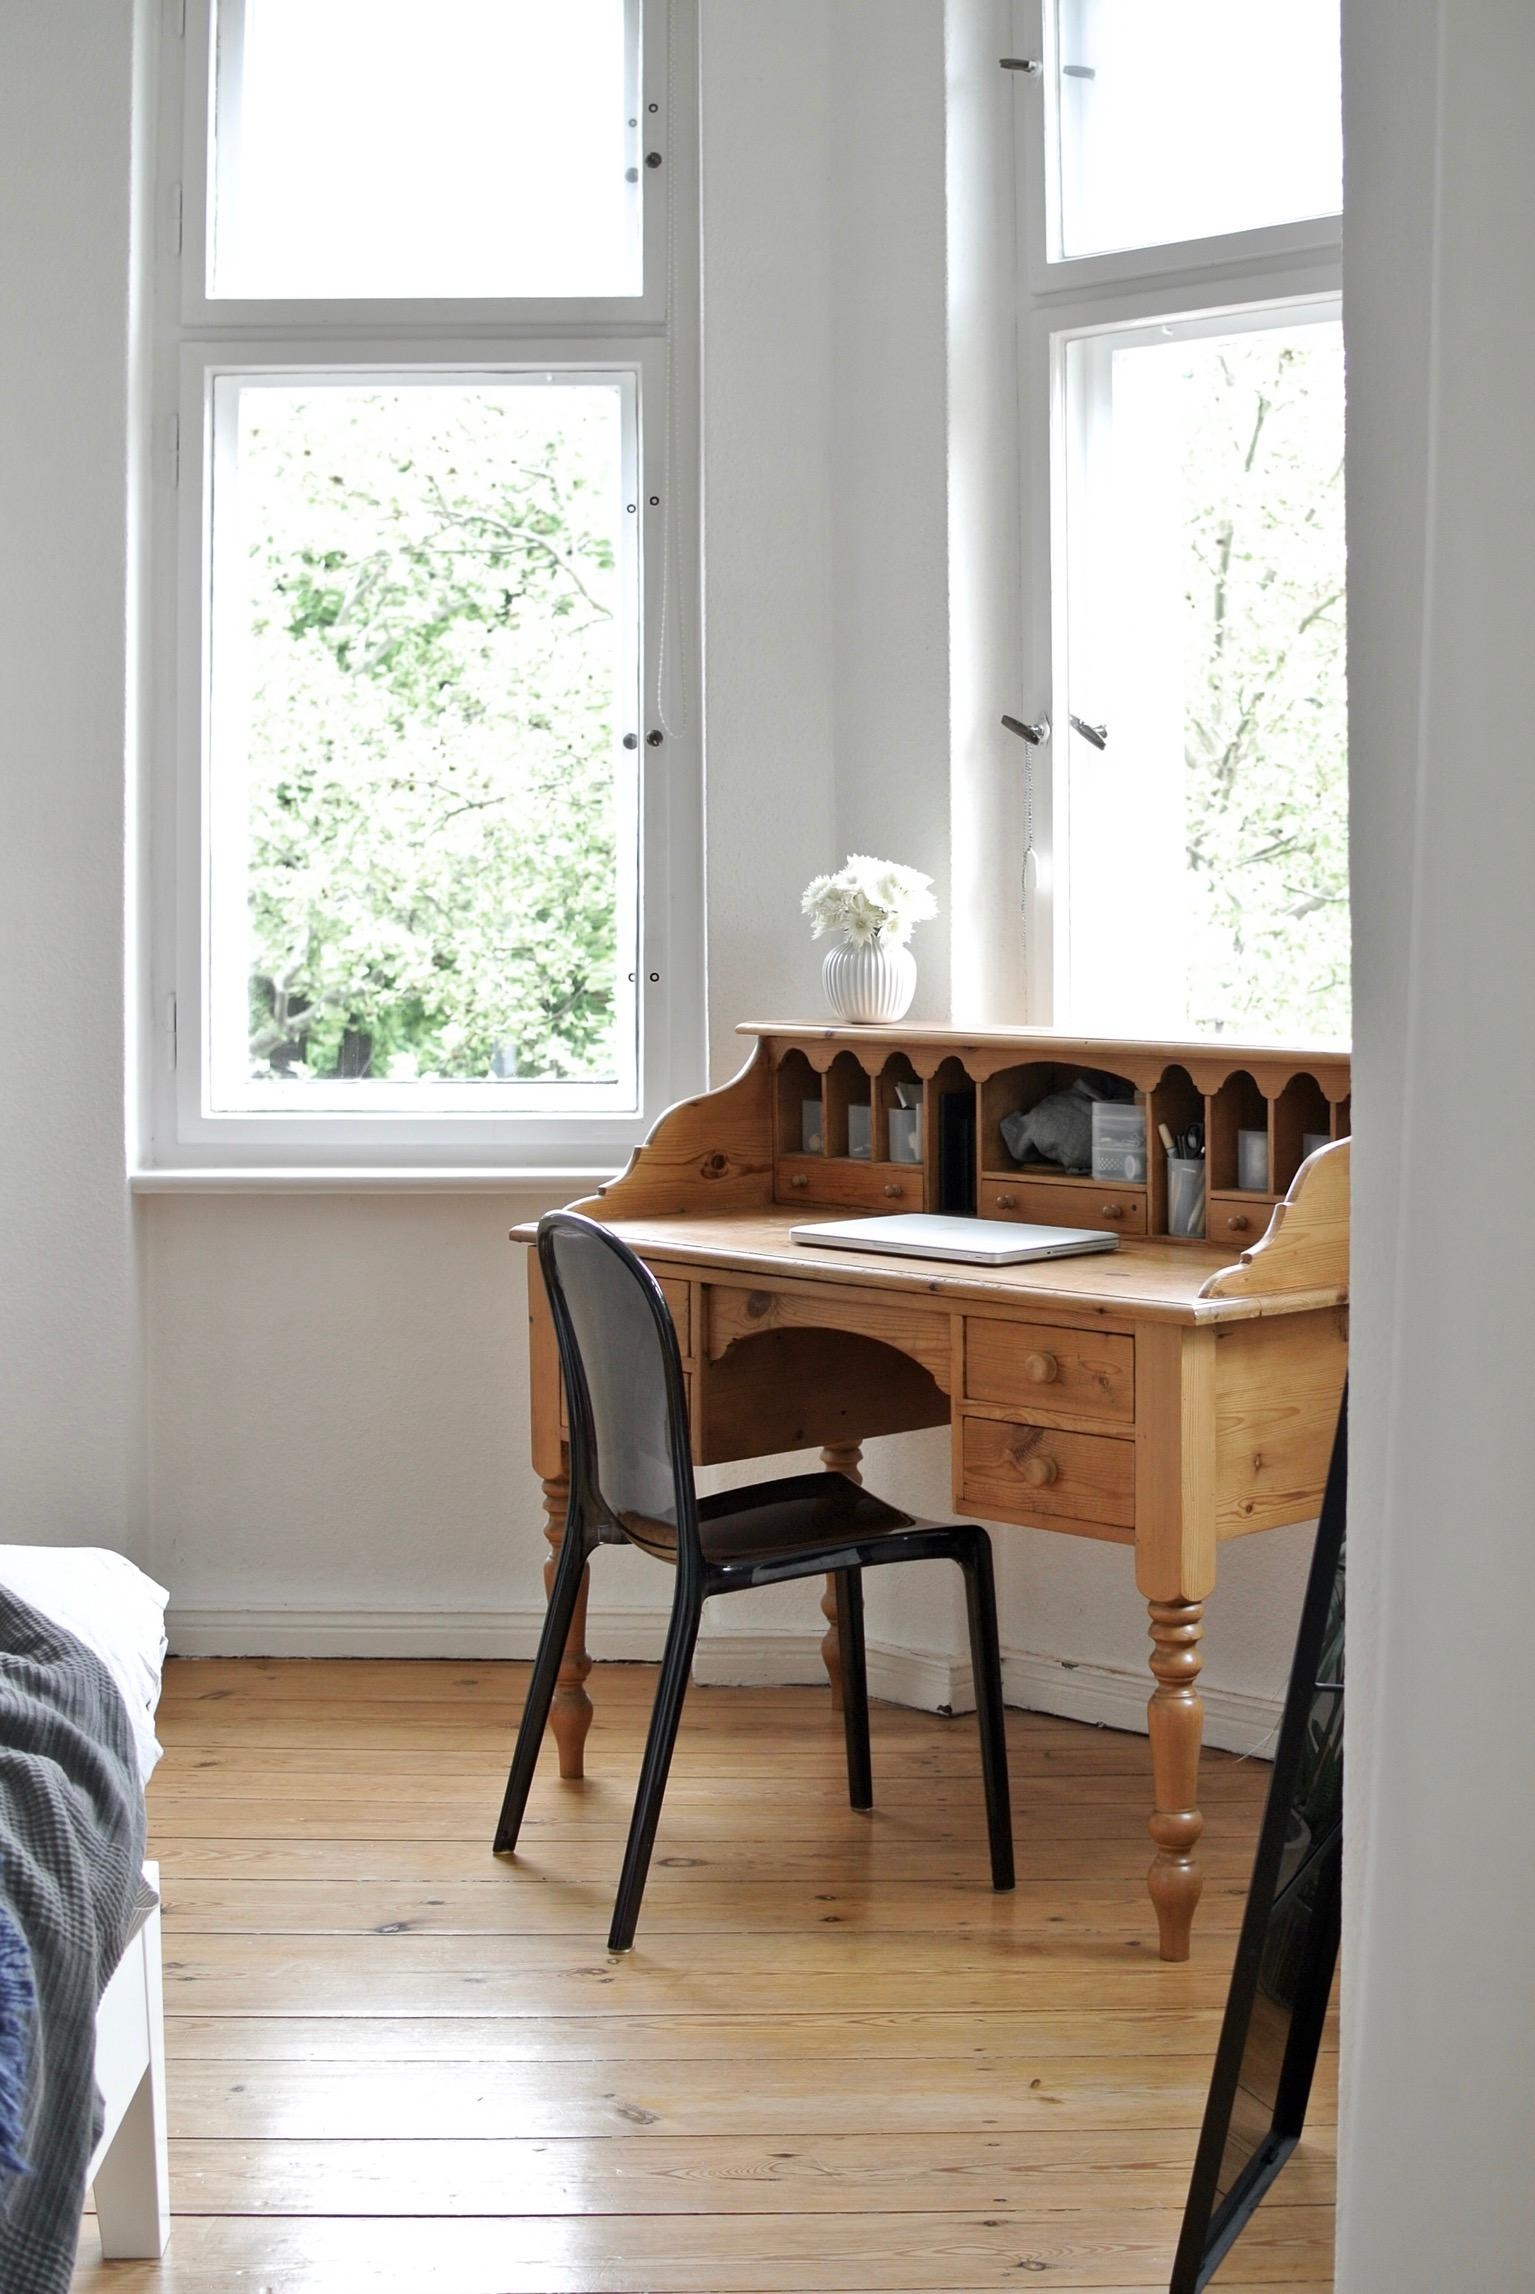 es gibt einen neuen Platz für unseren #Schreibtisch im #Erker :) 
#Altbauwohnung #Schlafzimmer